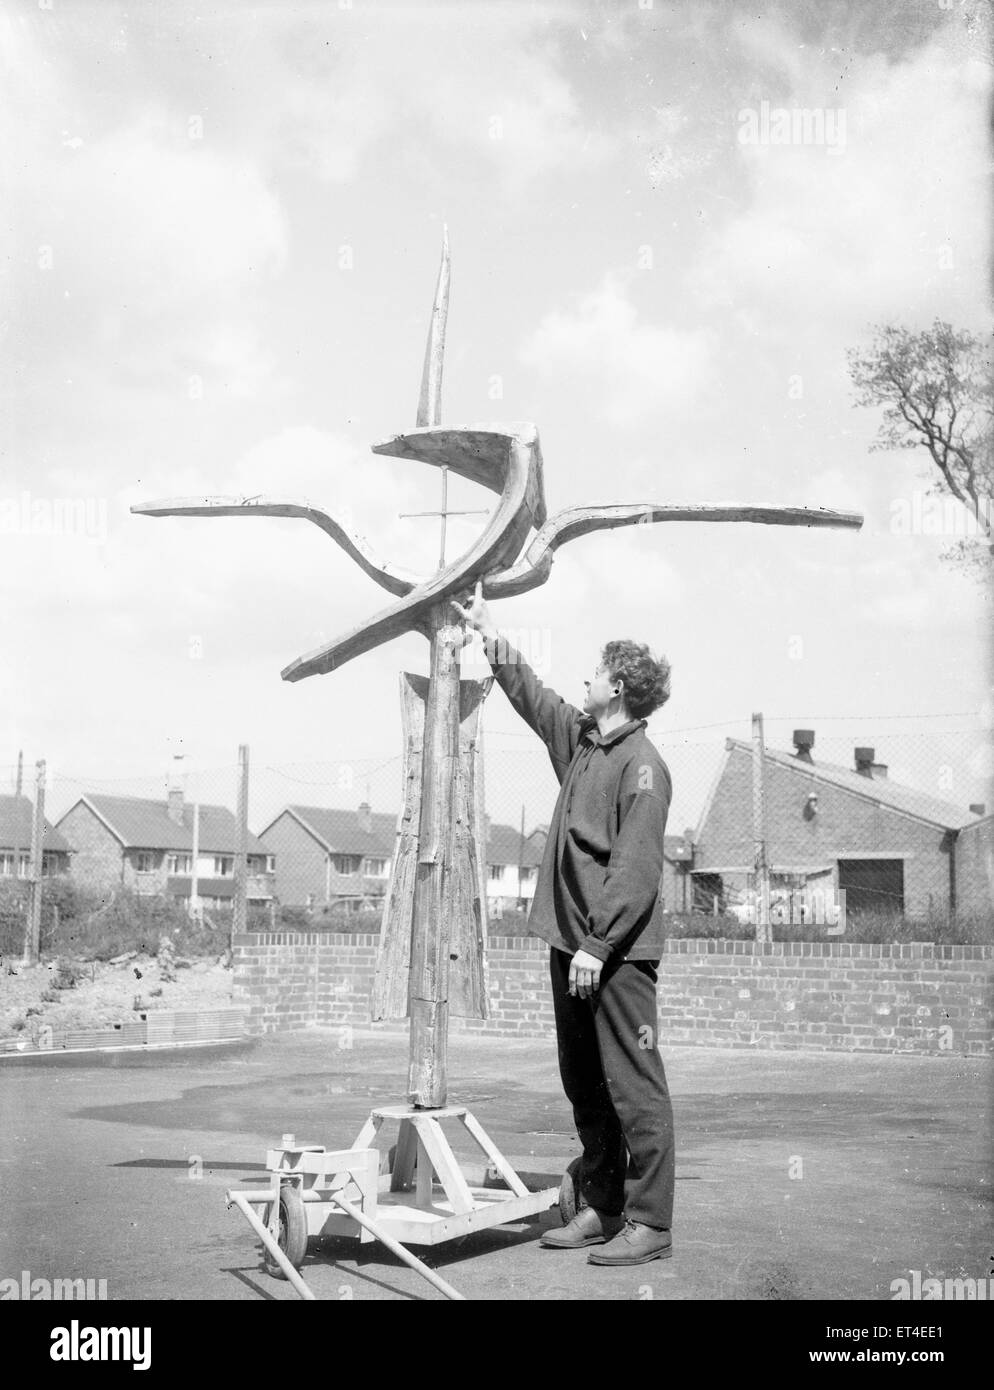 La cruz de clavos creada por Geoffrey Clarke para el altar en la recién construida Catedral de Coventry tiene una inspección final antes de ser trasladado a la catedral circa 1962 Foto de stock